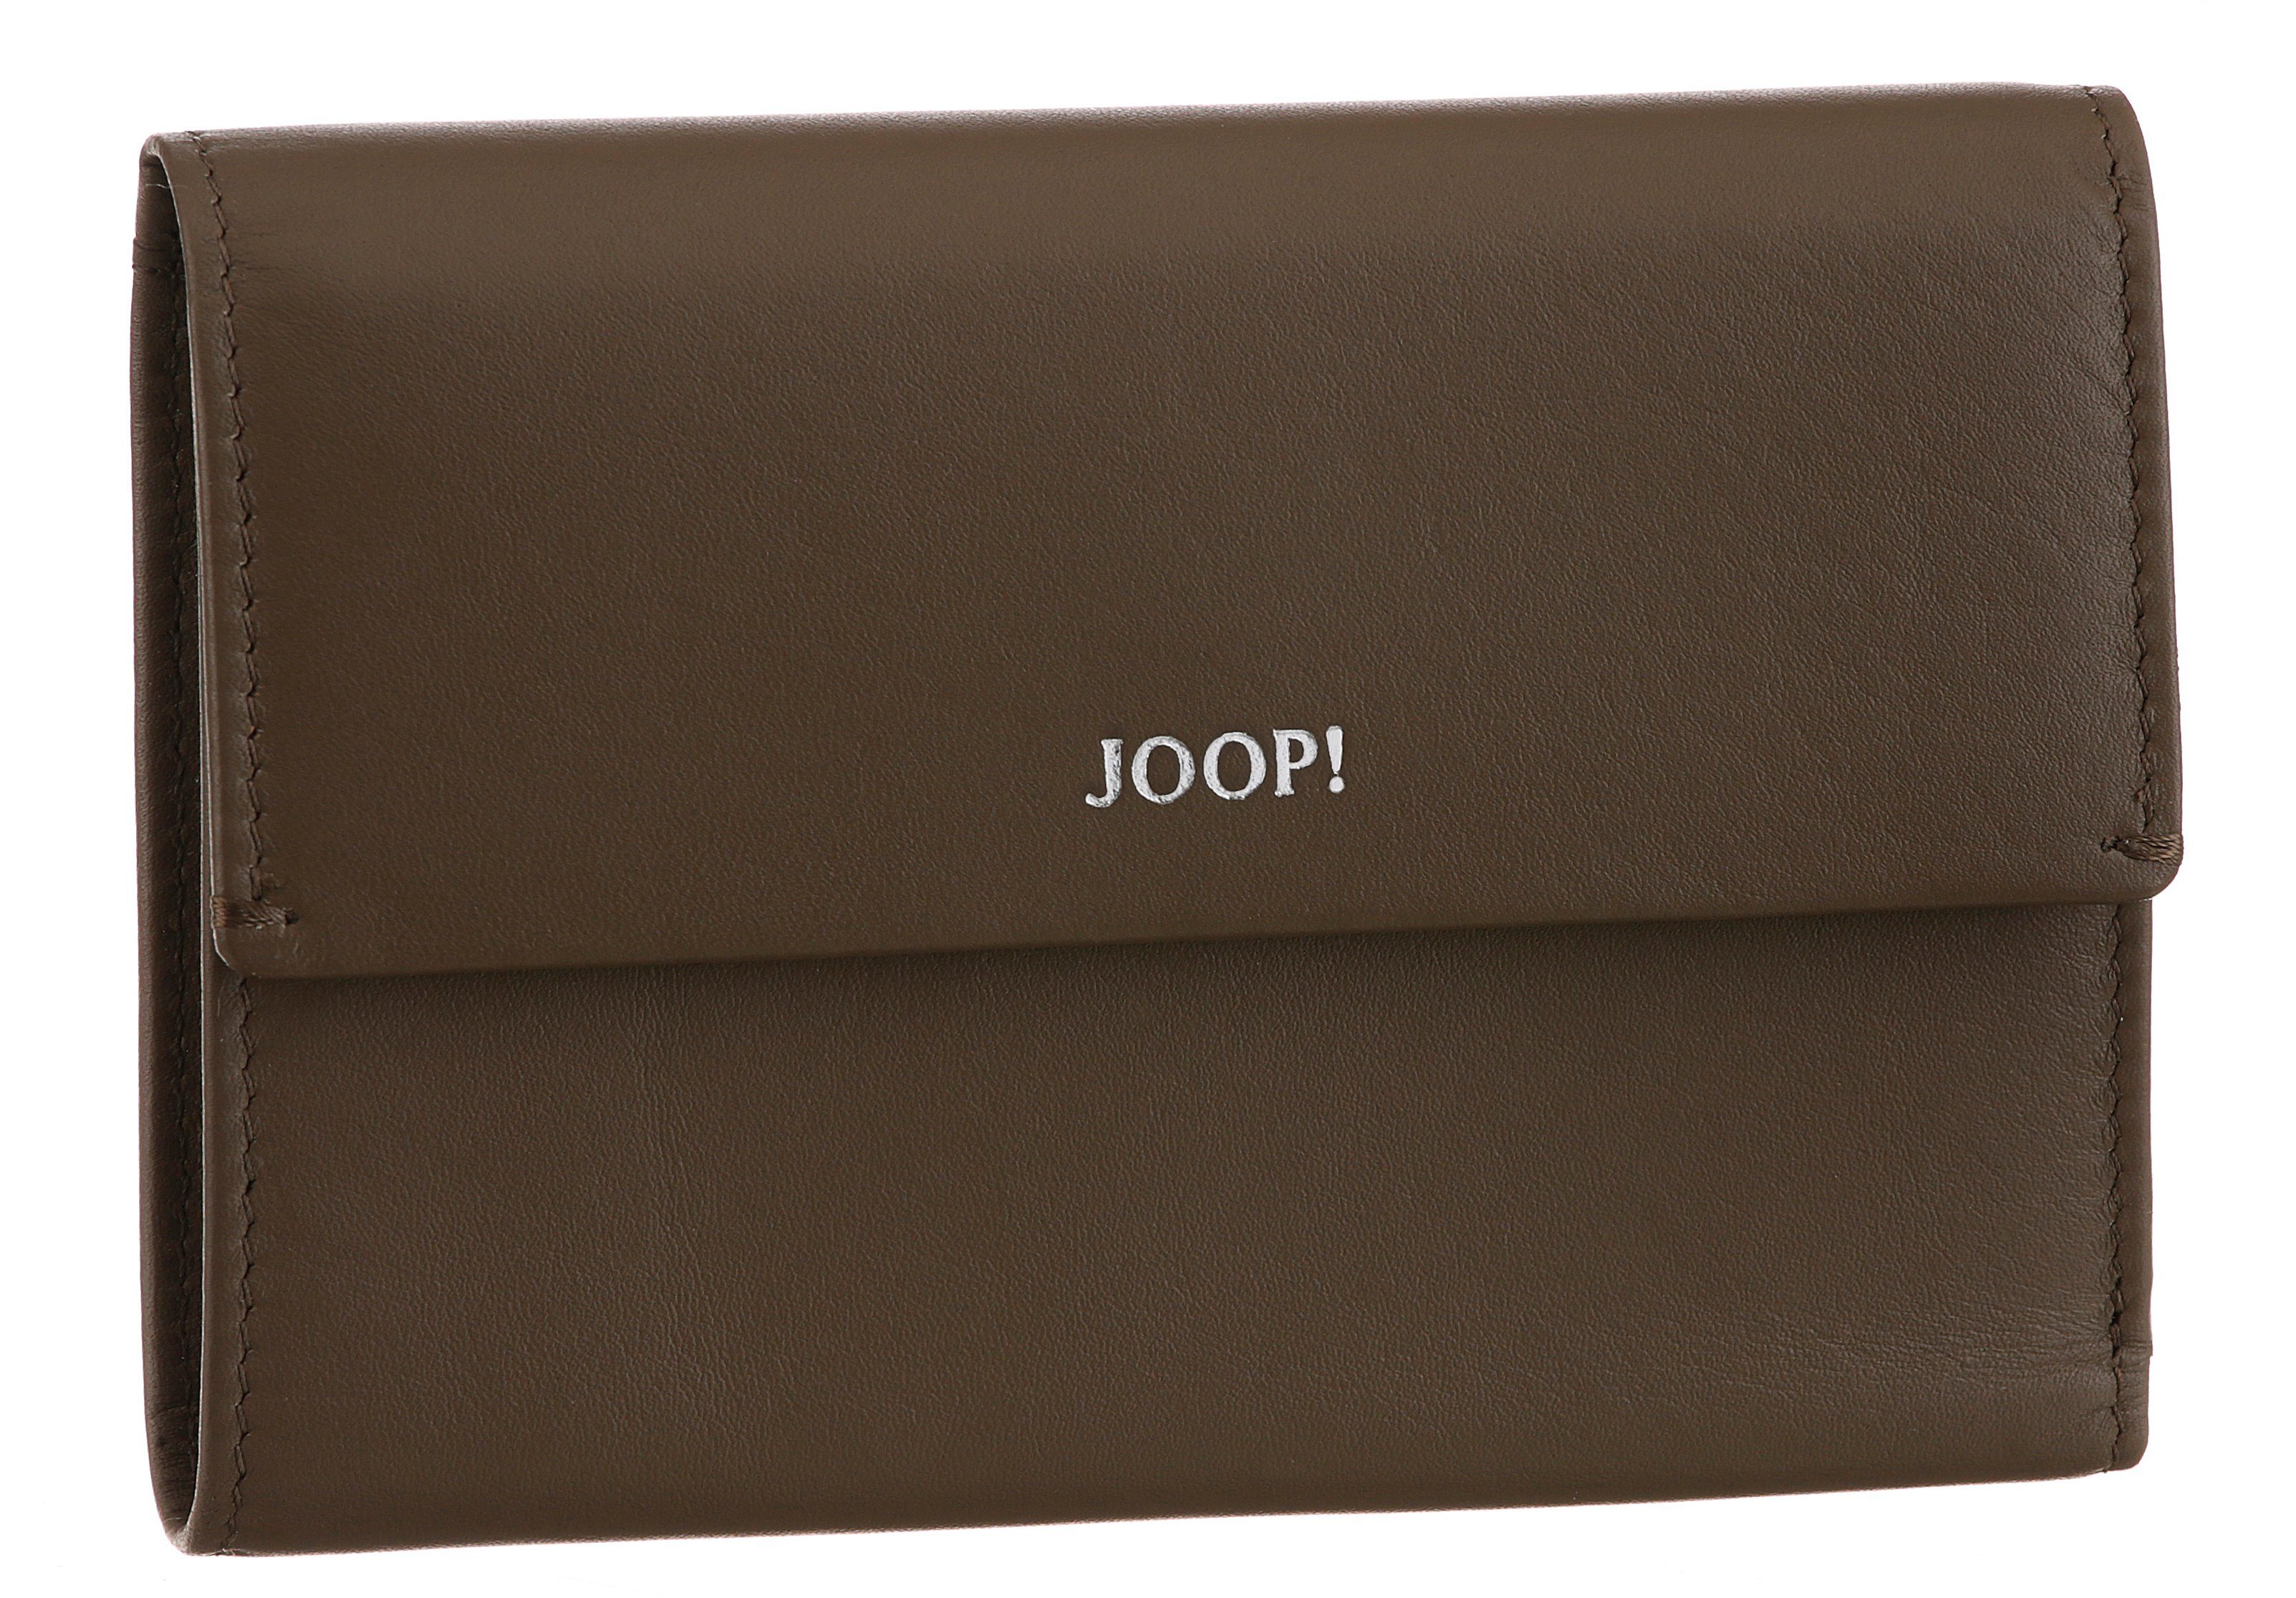 Joop! Geldbörse sofisticato in mh10f, cosma dunkelbraun schlichtem 1.0 purse Design